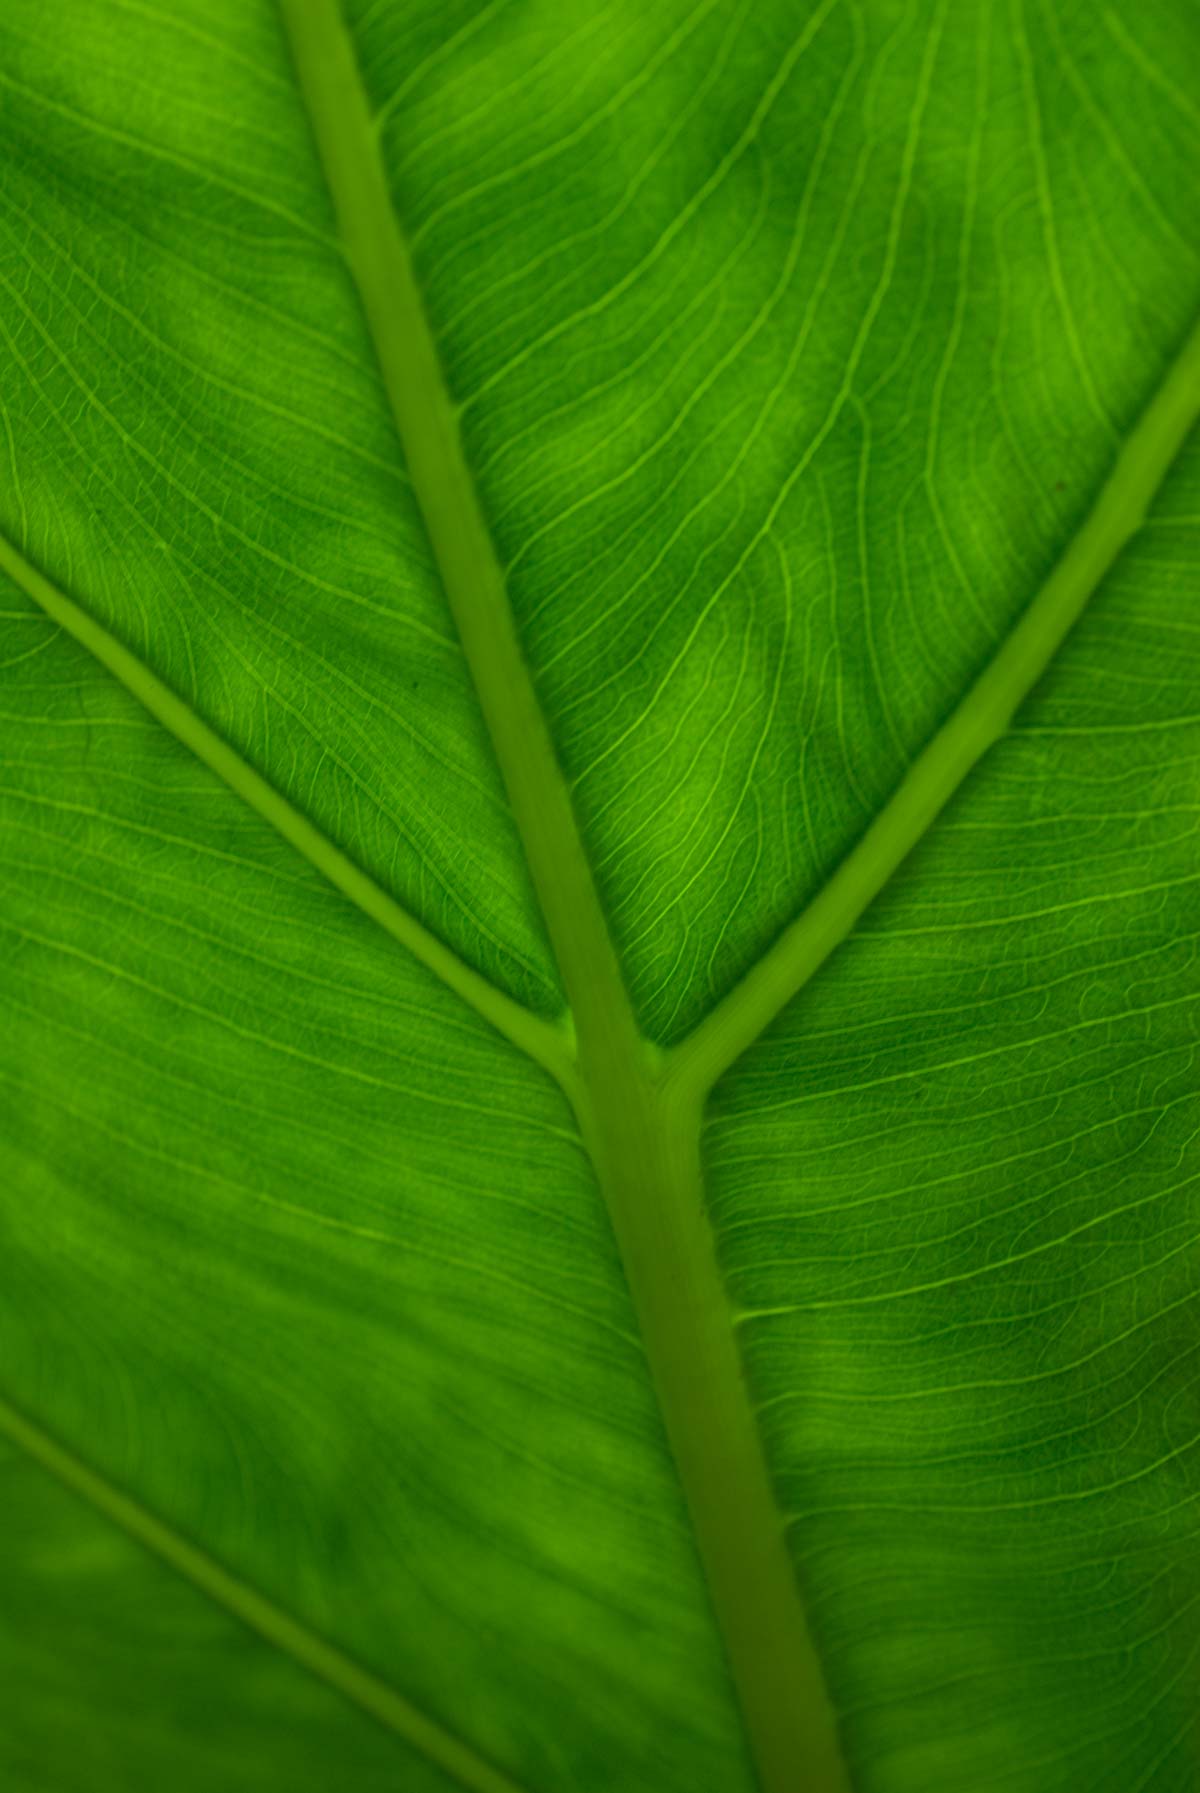 09-leaf_cali